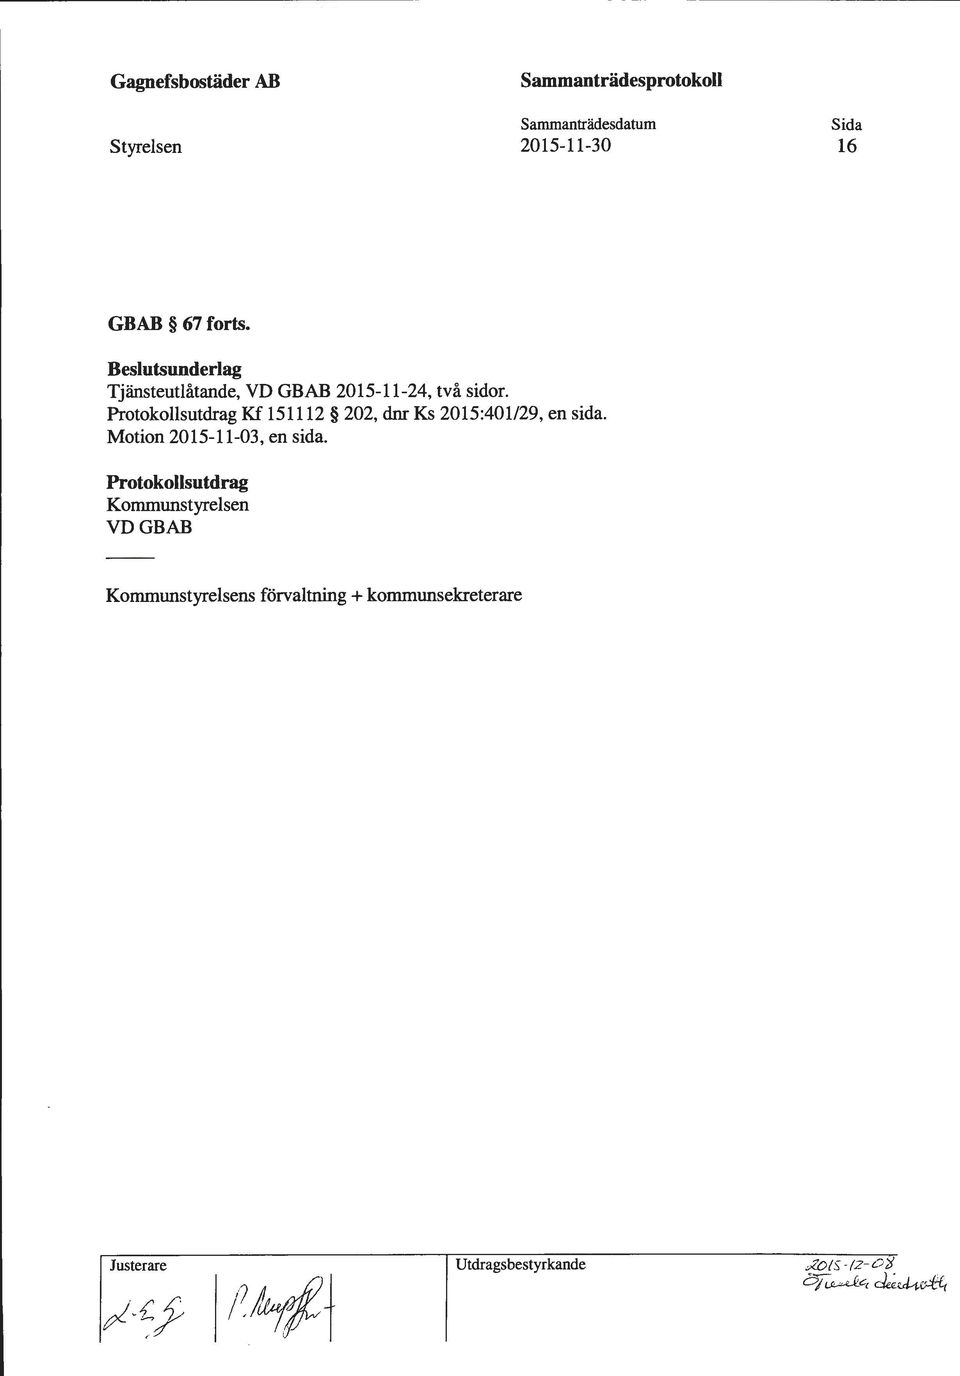 Protokollsutdrag Kf 151112 202, dnr Ks 2015:401/29, en sida. Motion 2015-11-03, en sida.